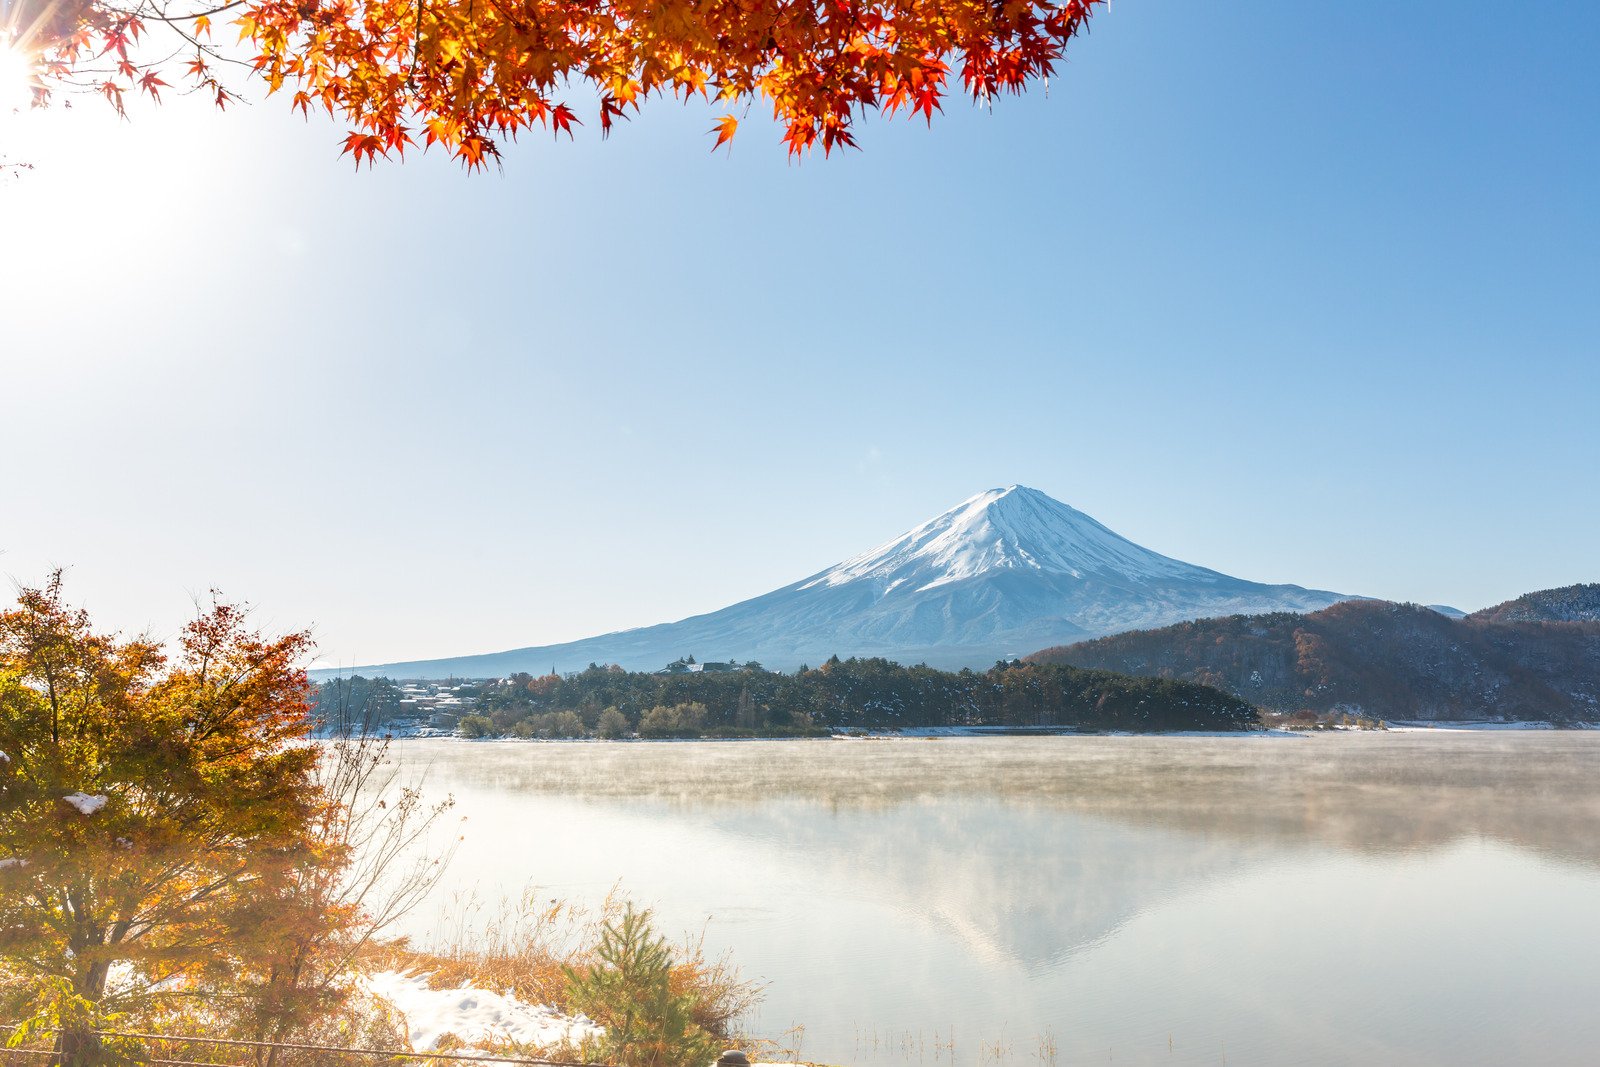 Nhật Bản “khoác lớp áo” đỏ - vàng rực rỡ khi vào thu